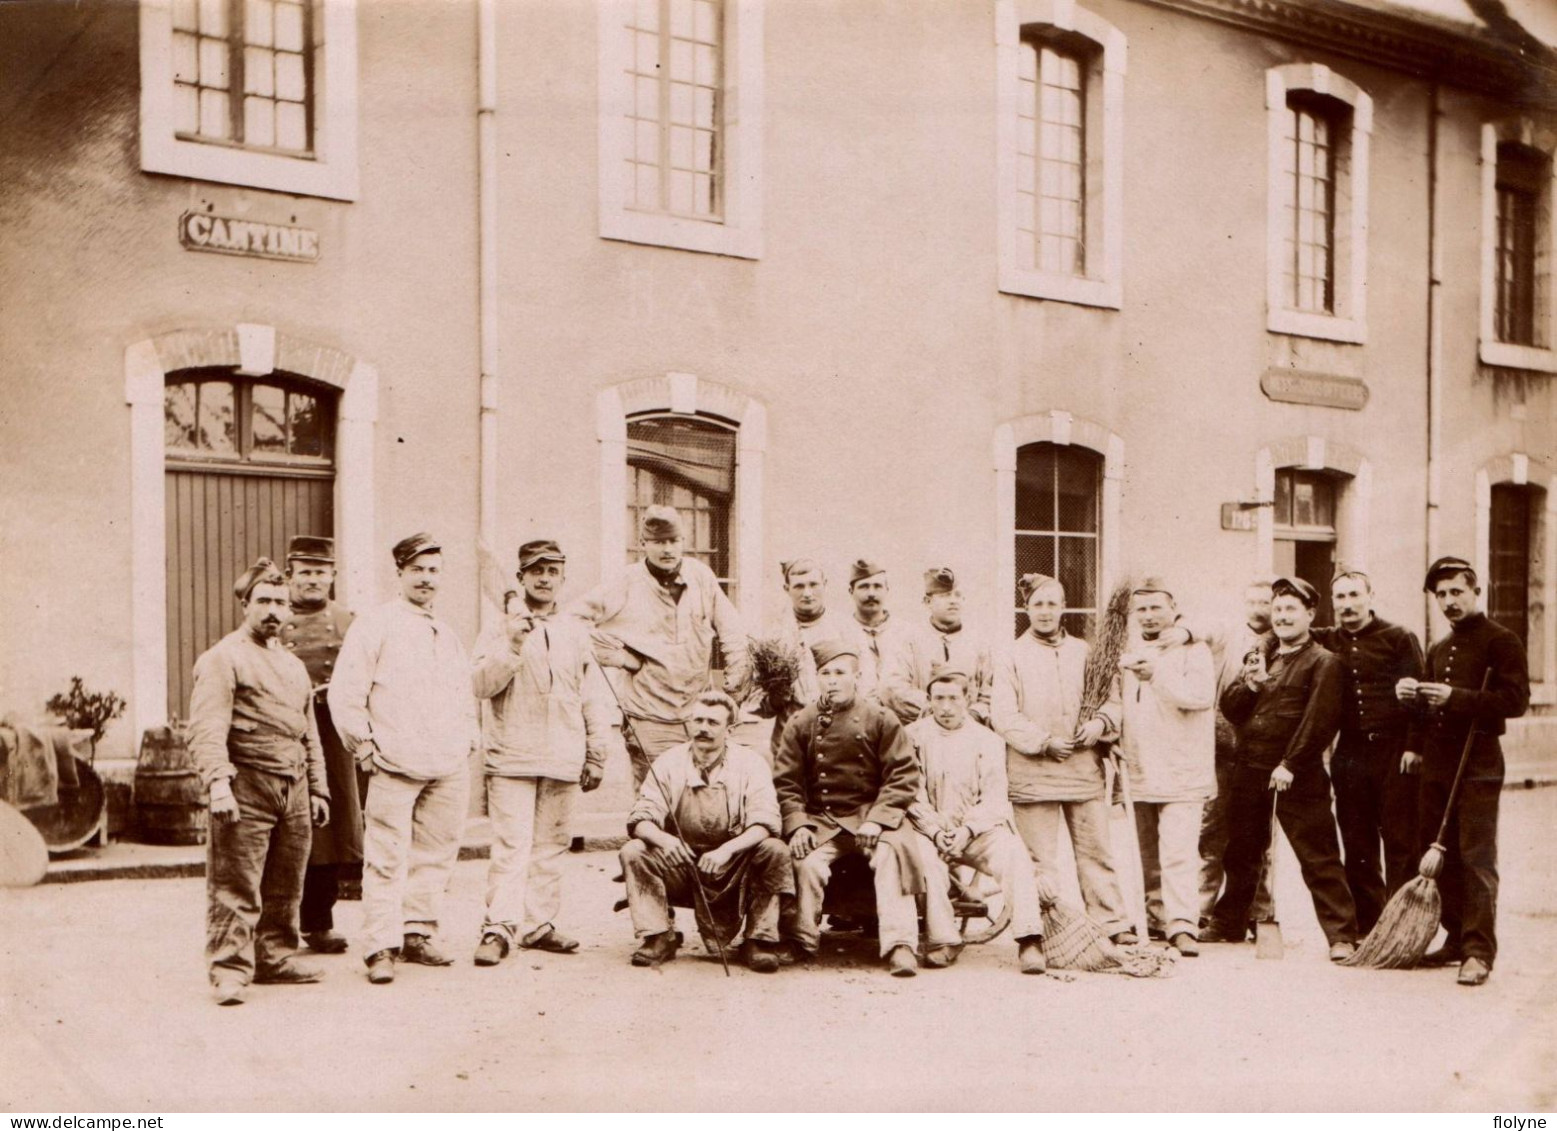 Belley - Militaria - Photo Albuminée 1900 - Militaires Soldats Du 133ème Régiment D'infanterie Dans La Caserne - Belley